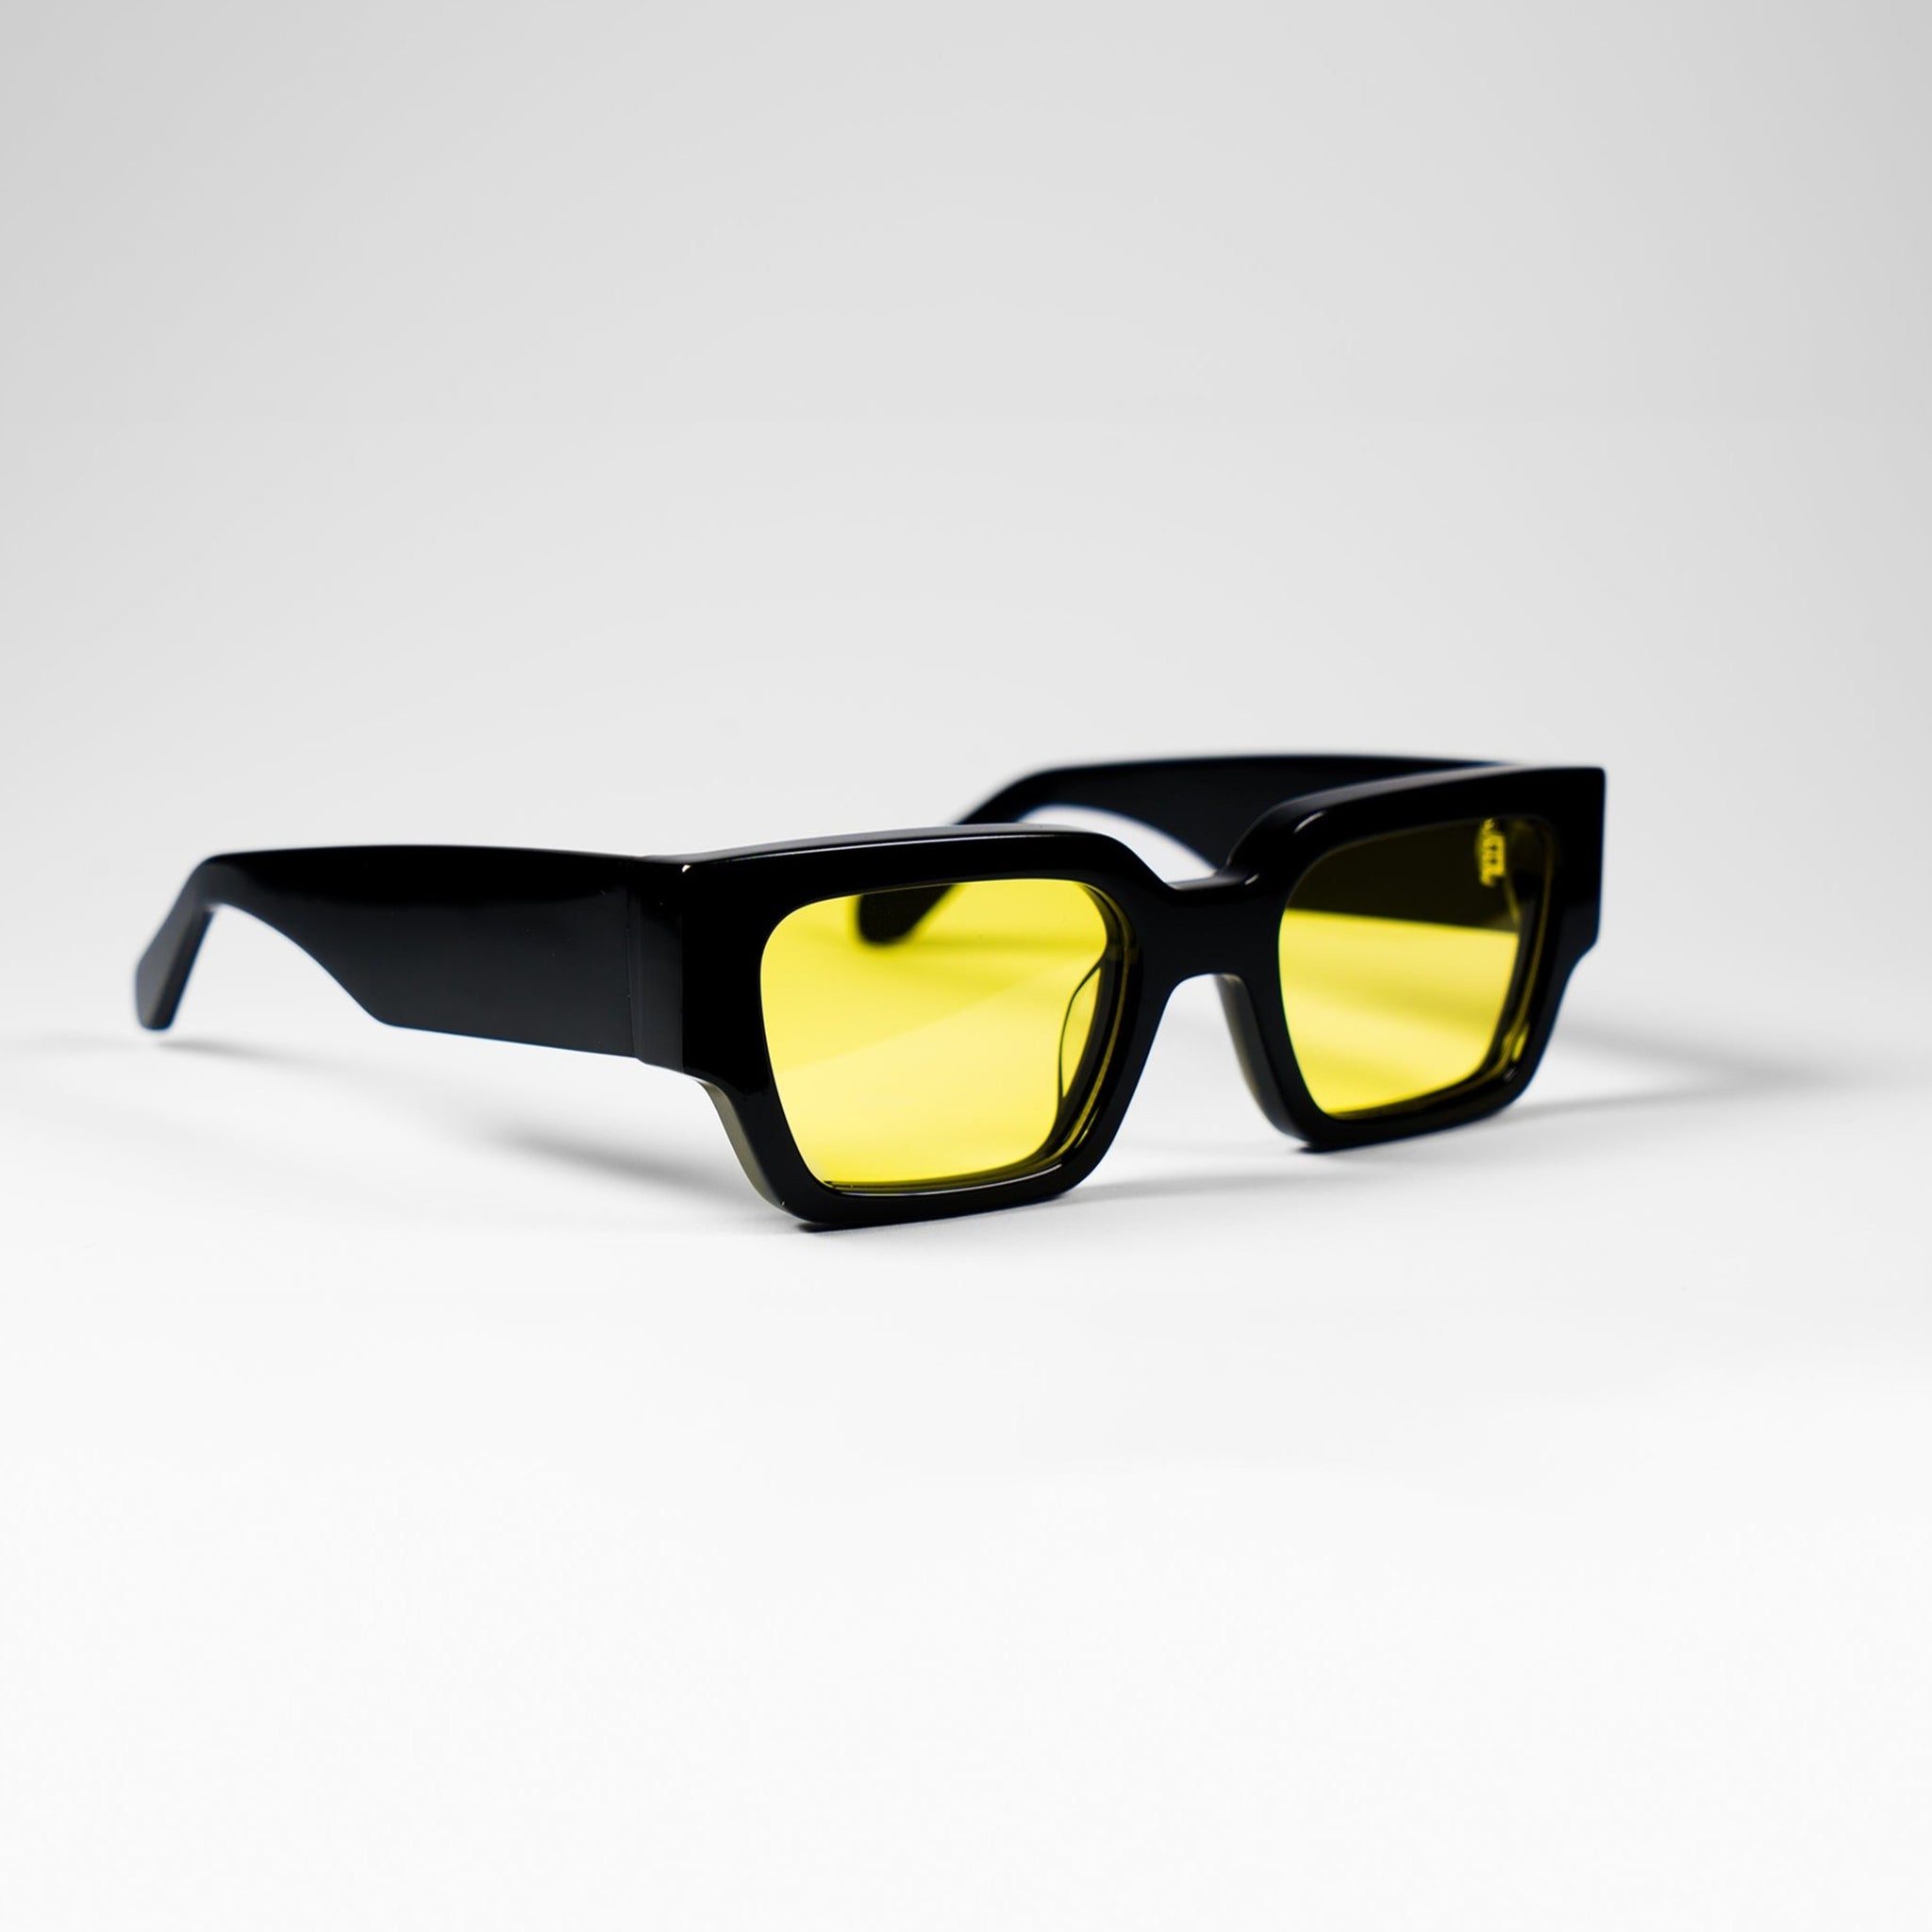 MBN 01 Sunglasses